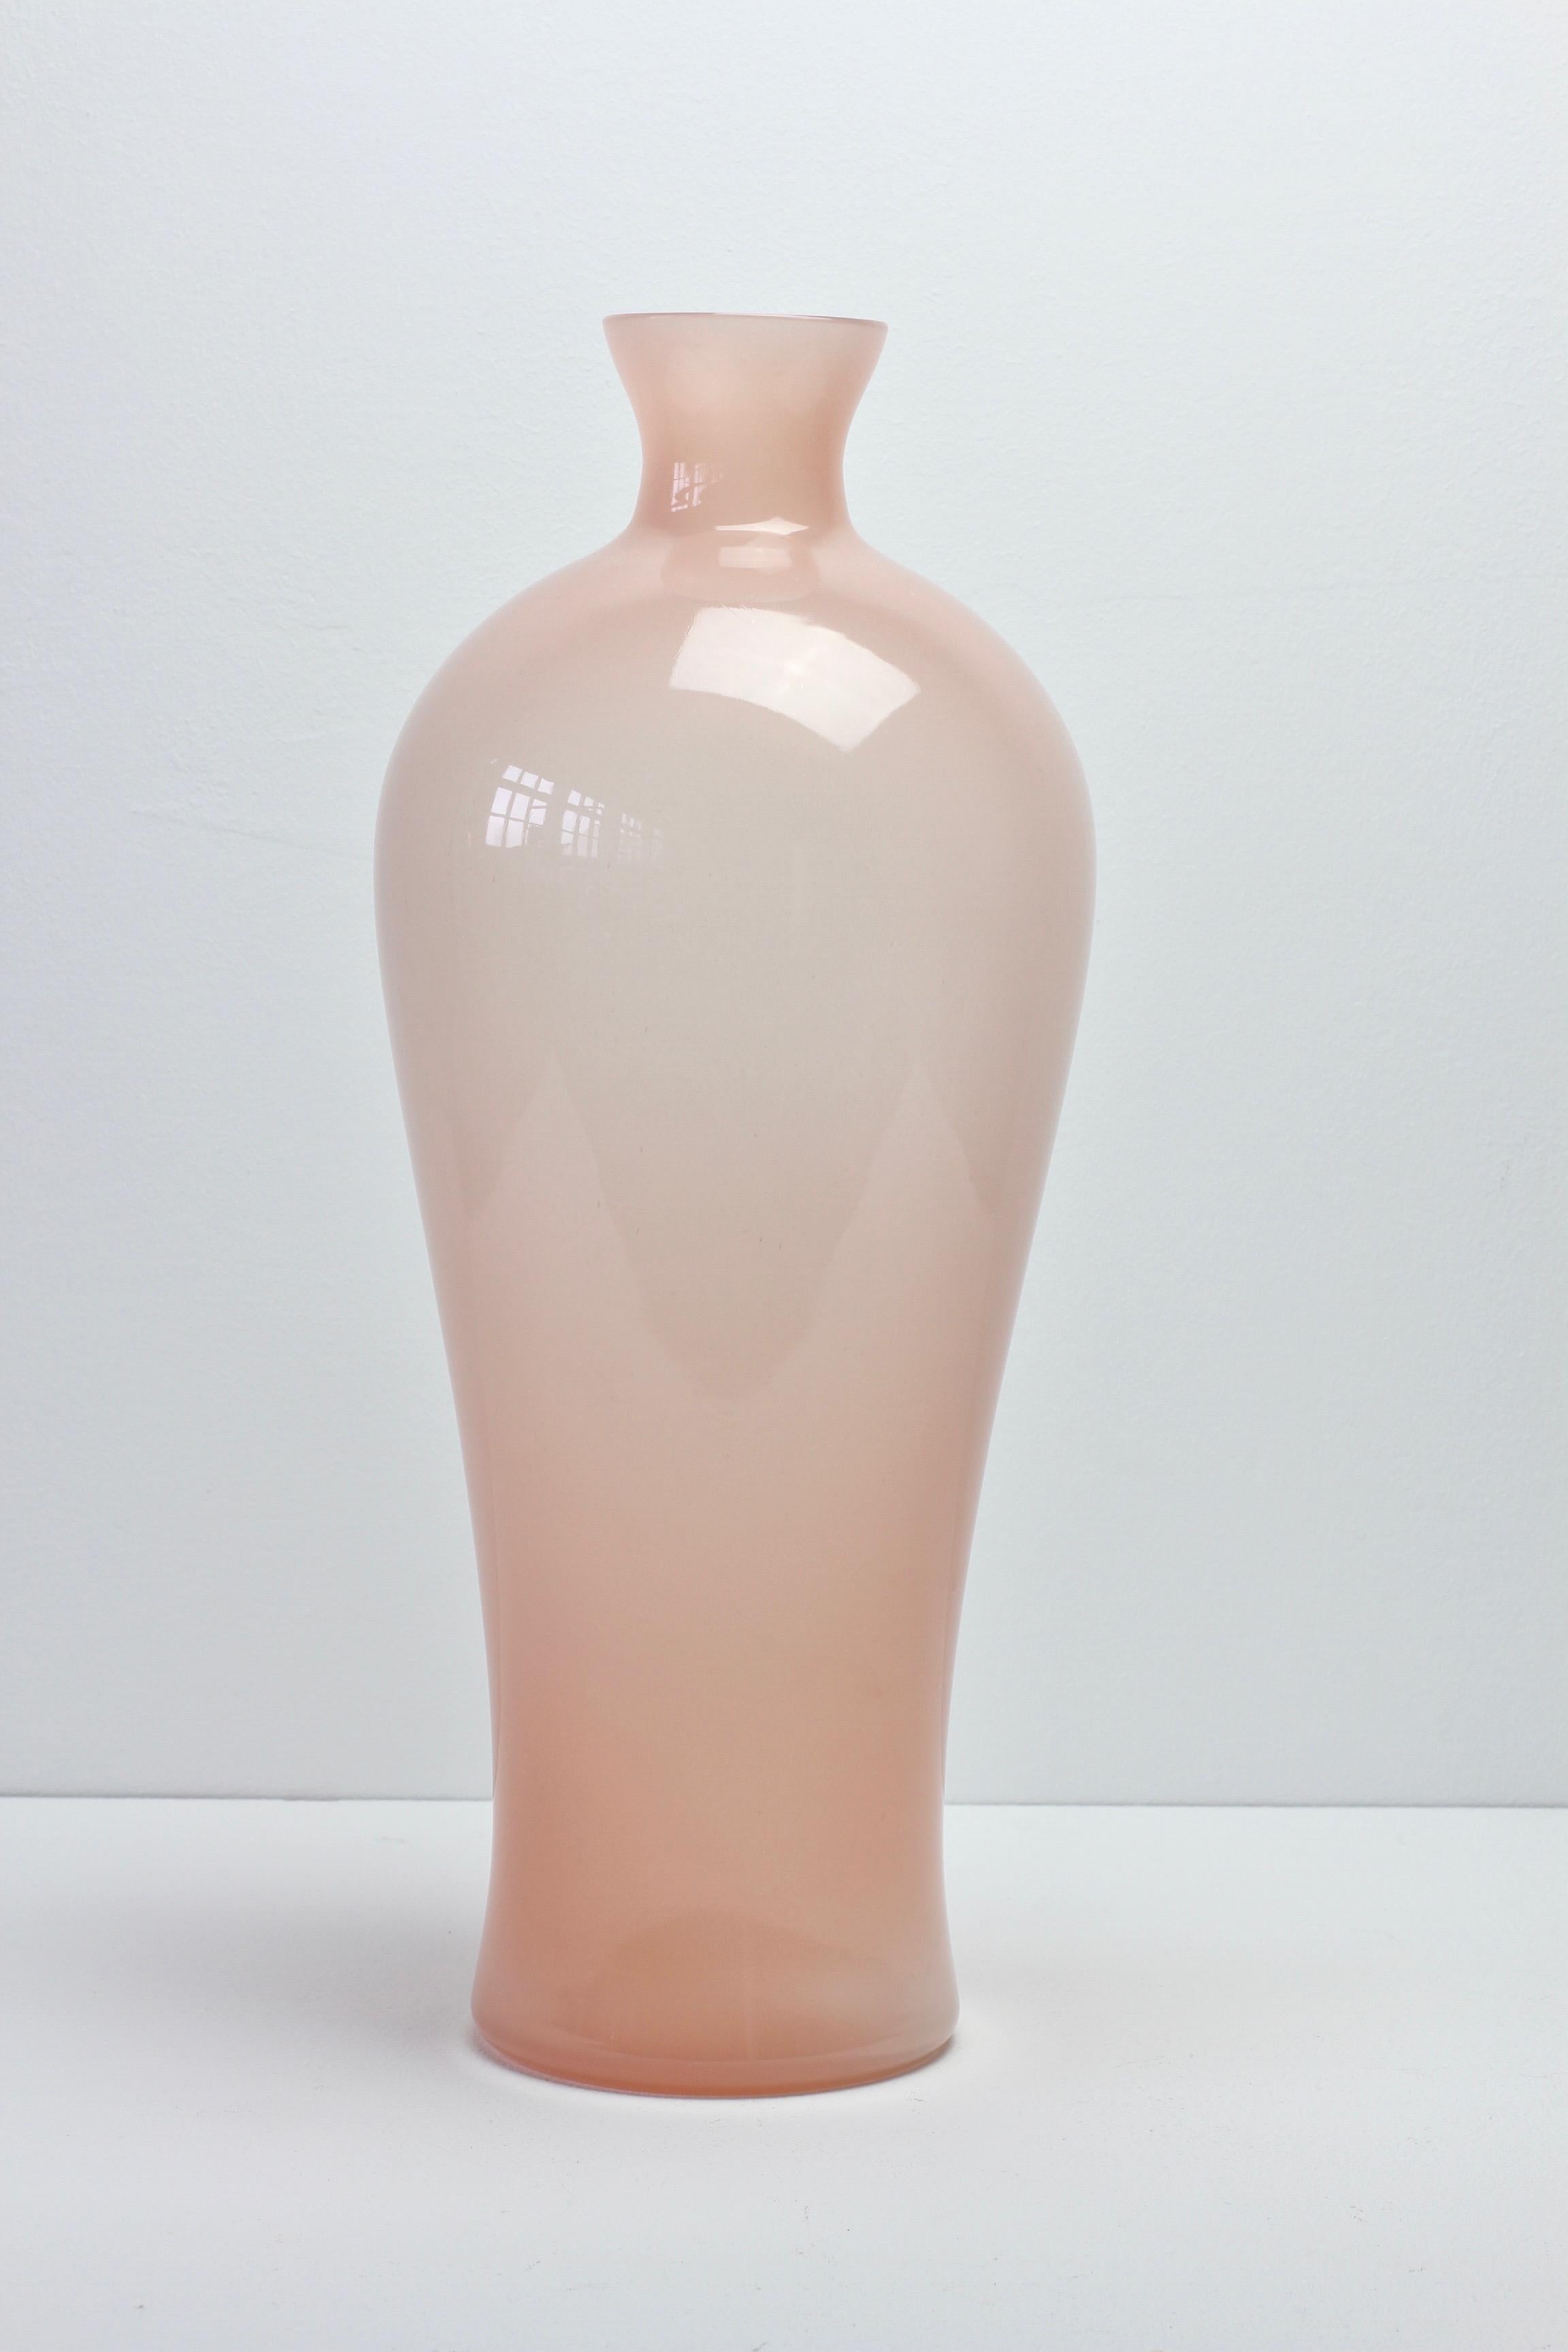 Große Vintage-Vase aus der Mitte des Jahrhunderts von Cenedese Vetri aus Murano, Italien. Besonders auffällig ist seine elegante Form und die rosa Farbe. Ein seltenes Schiff - besonders in dieser Größe.

Die Abmessungen sind: 41,3 cm hoch, 16,5 cm